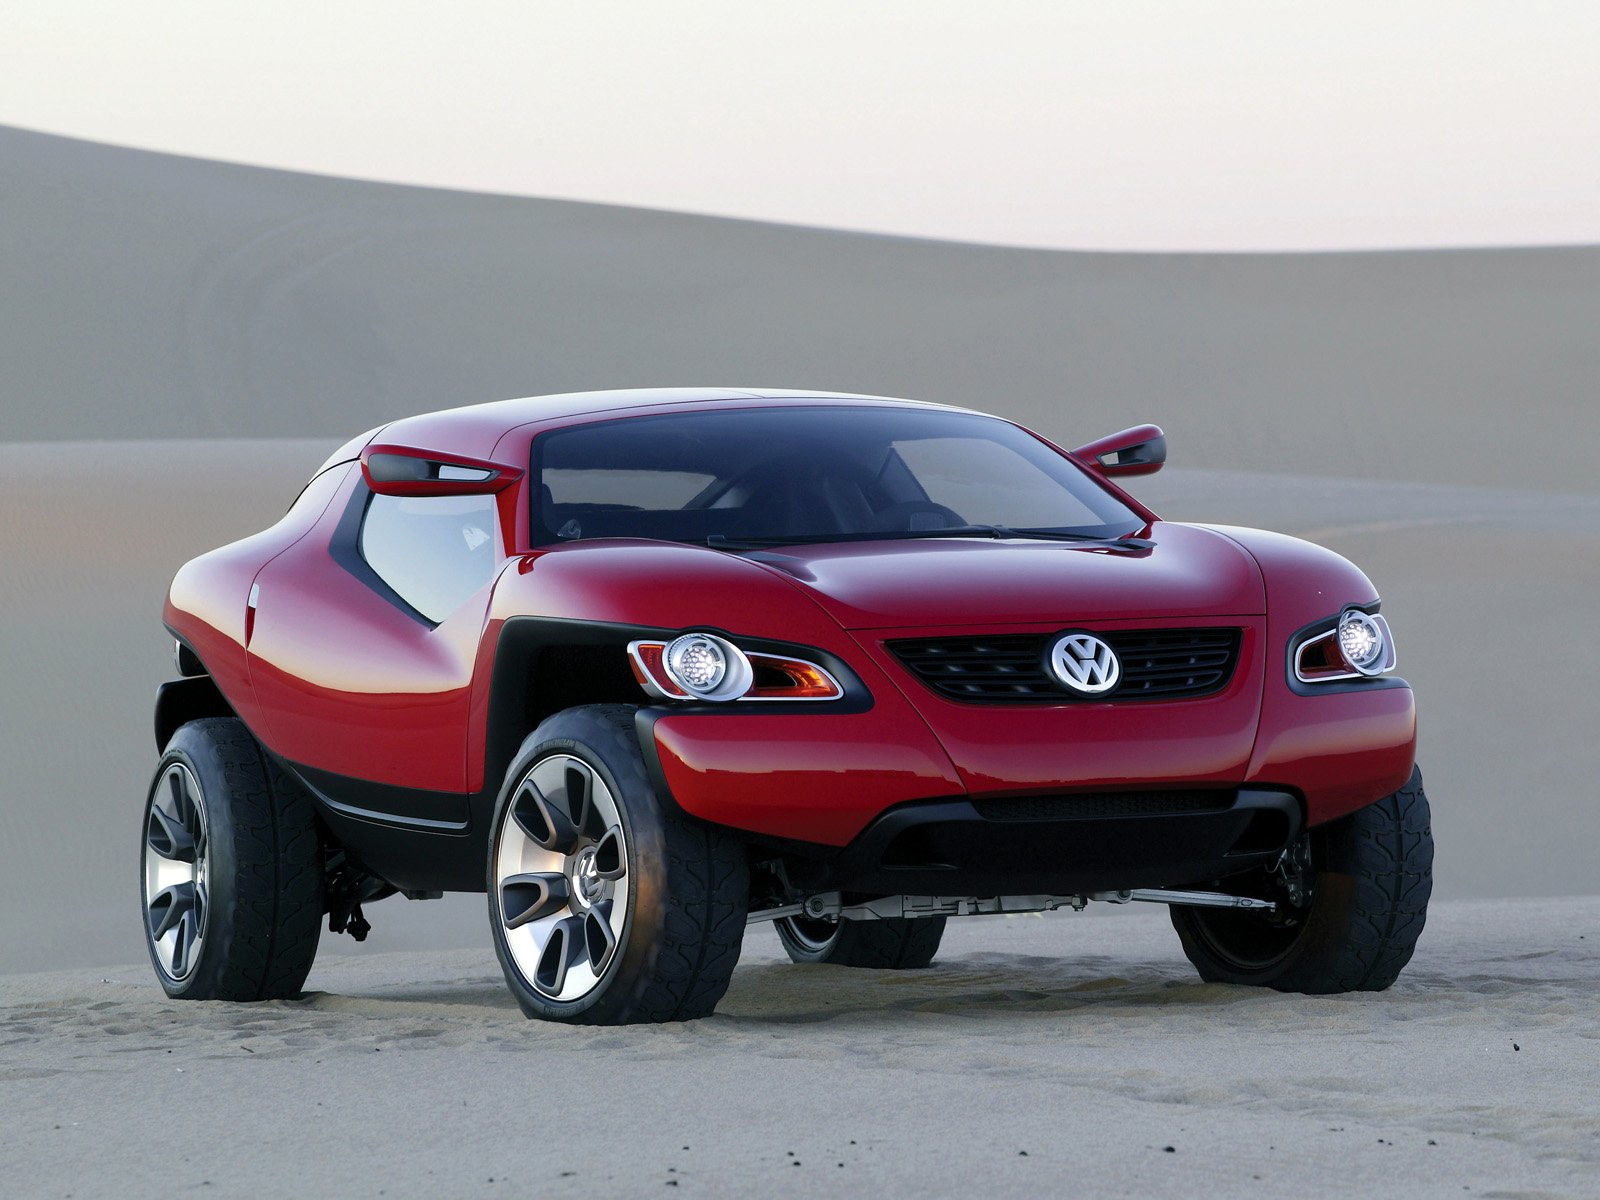 Volkswagen Concept A #10